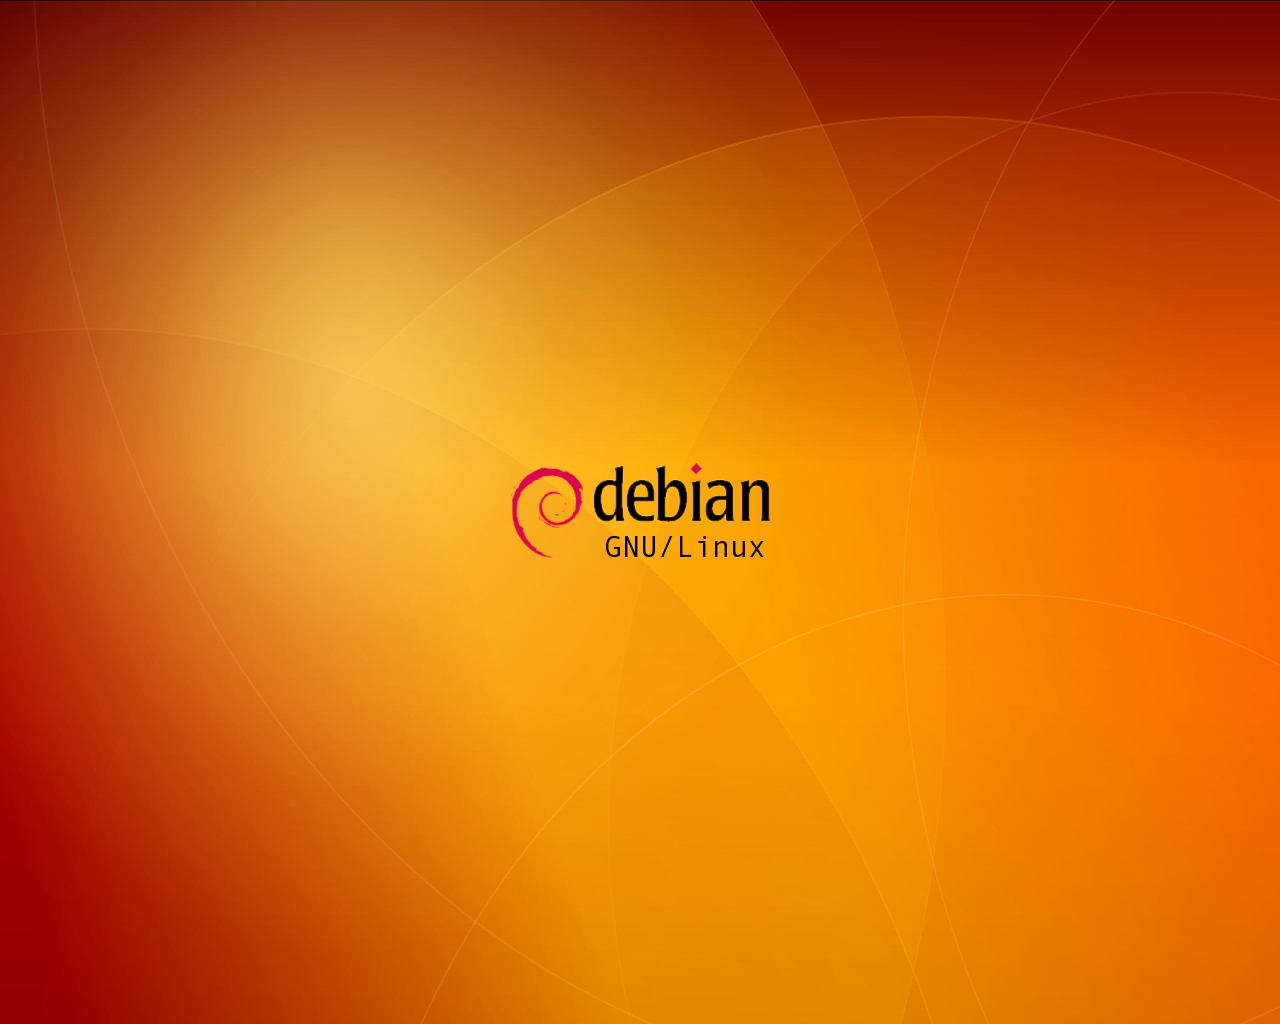 Debian Orange Background Wallpaper